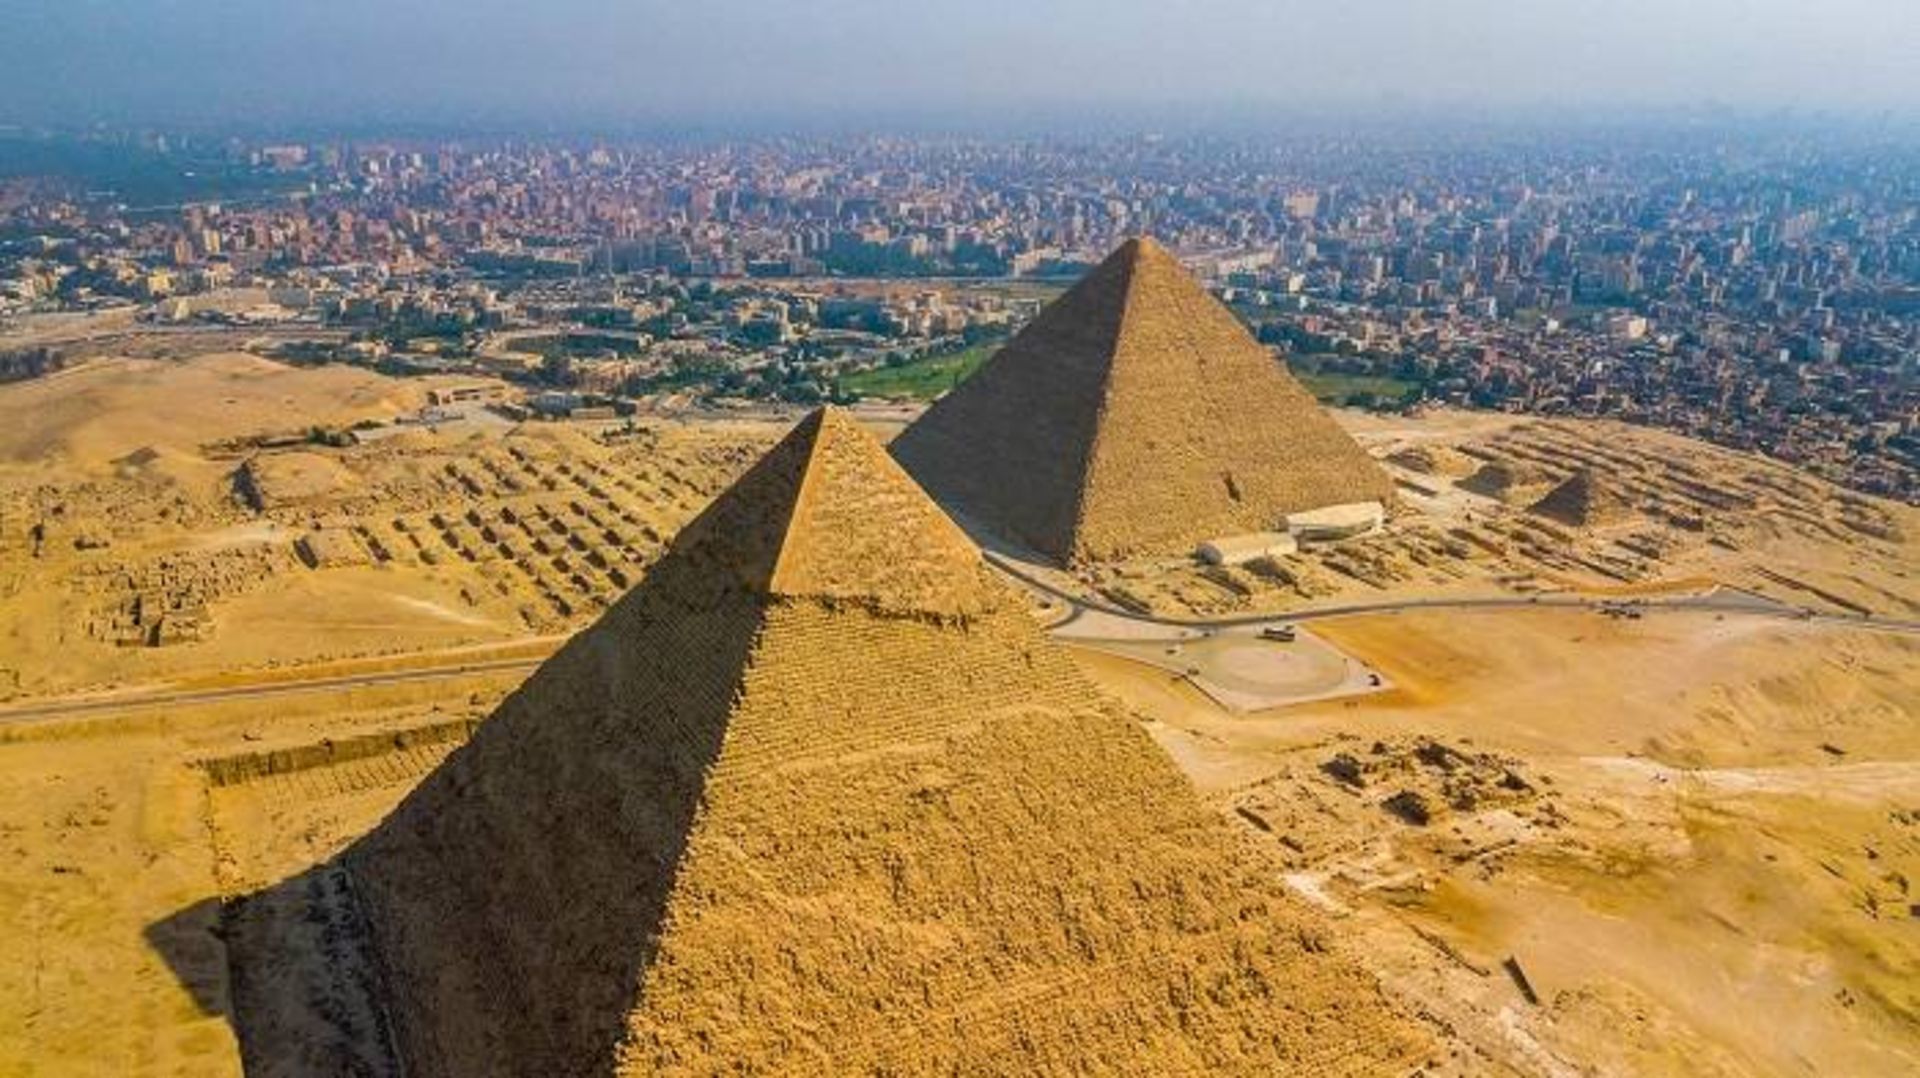 اهرام فراعنه مصر / pyramids